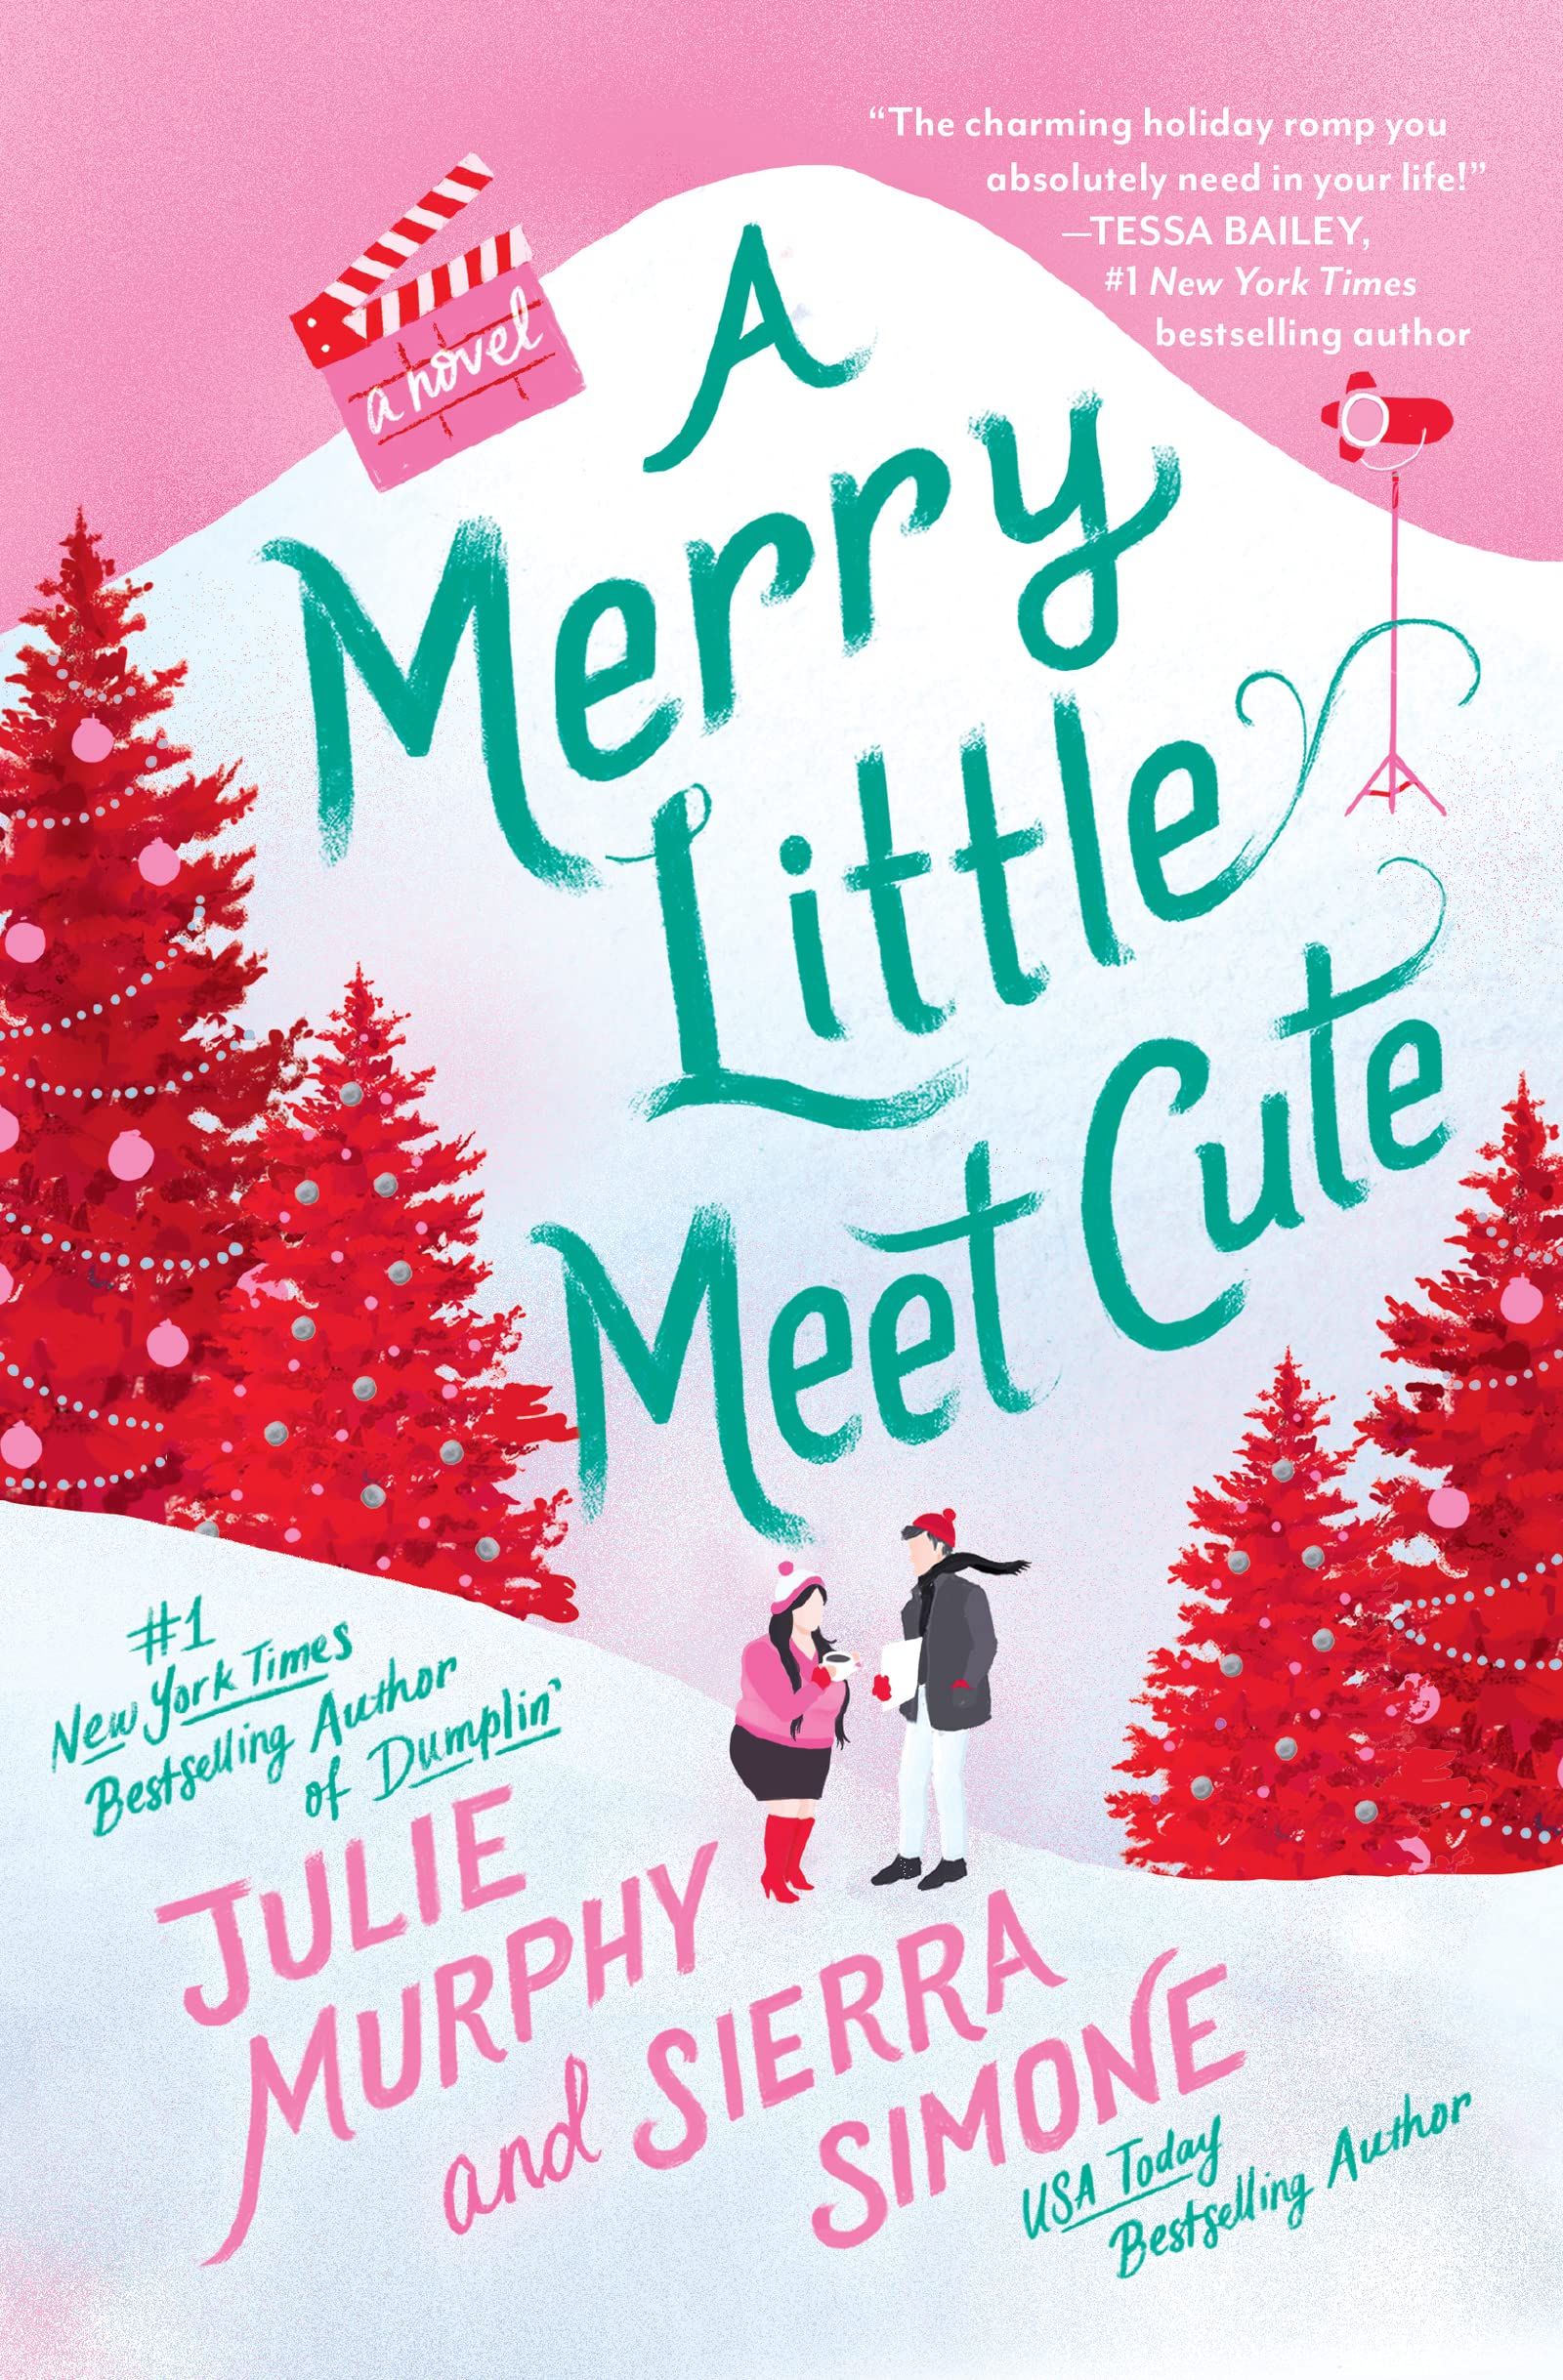 A Merry Little Meet Cute cover